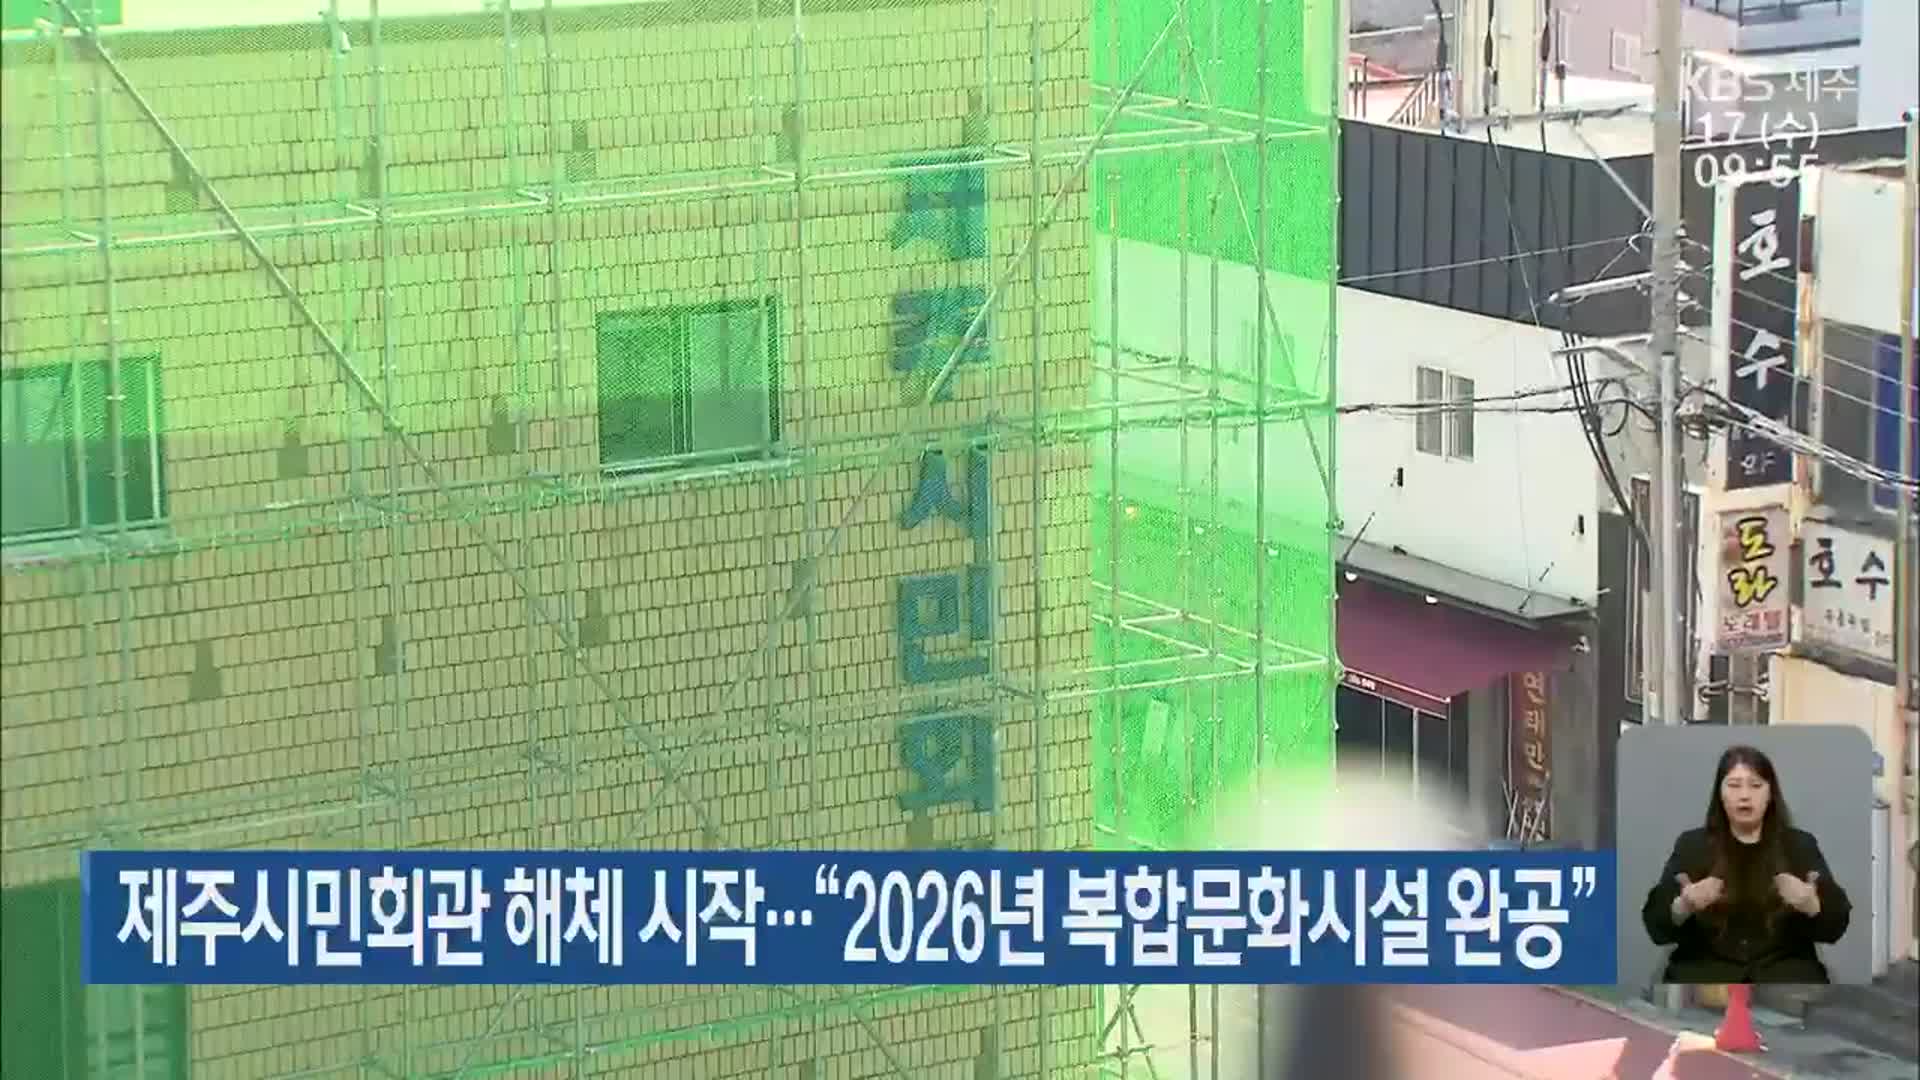 제주시민회관 해체 시작…“2026년 복합문화시설 완공”